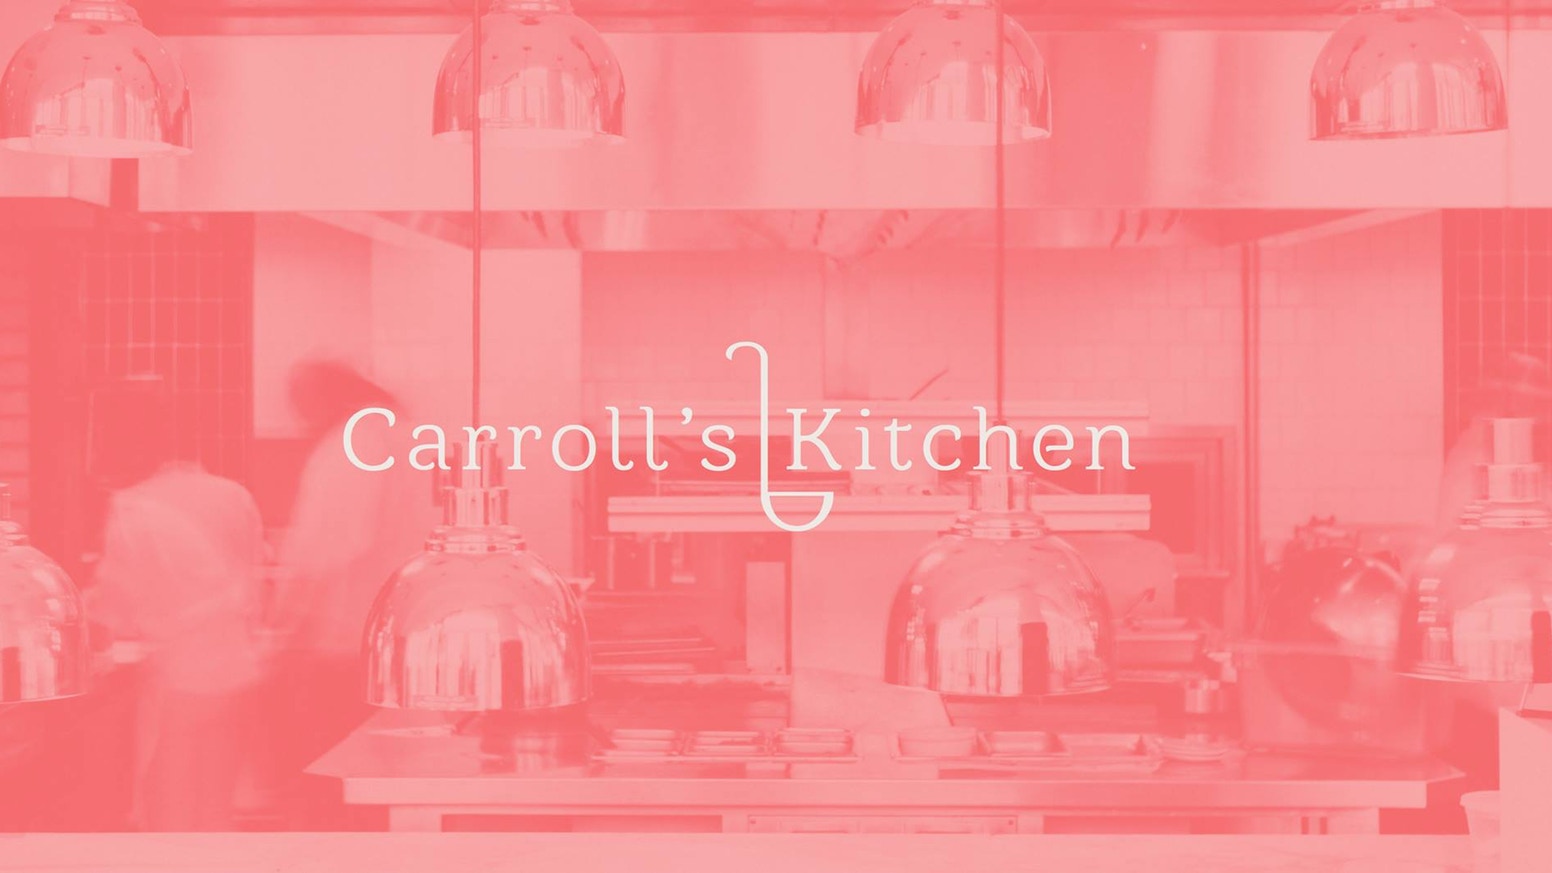 Nominee Carroll's Kitchen